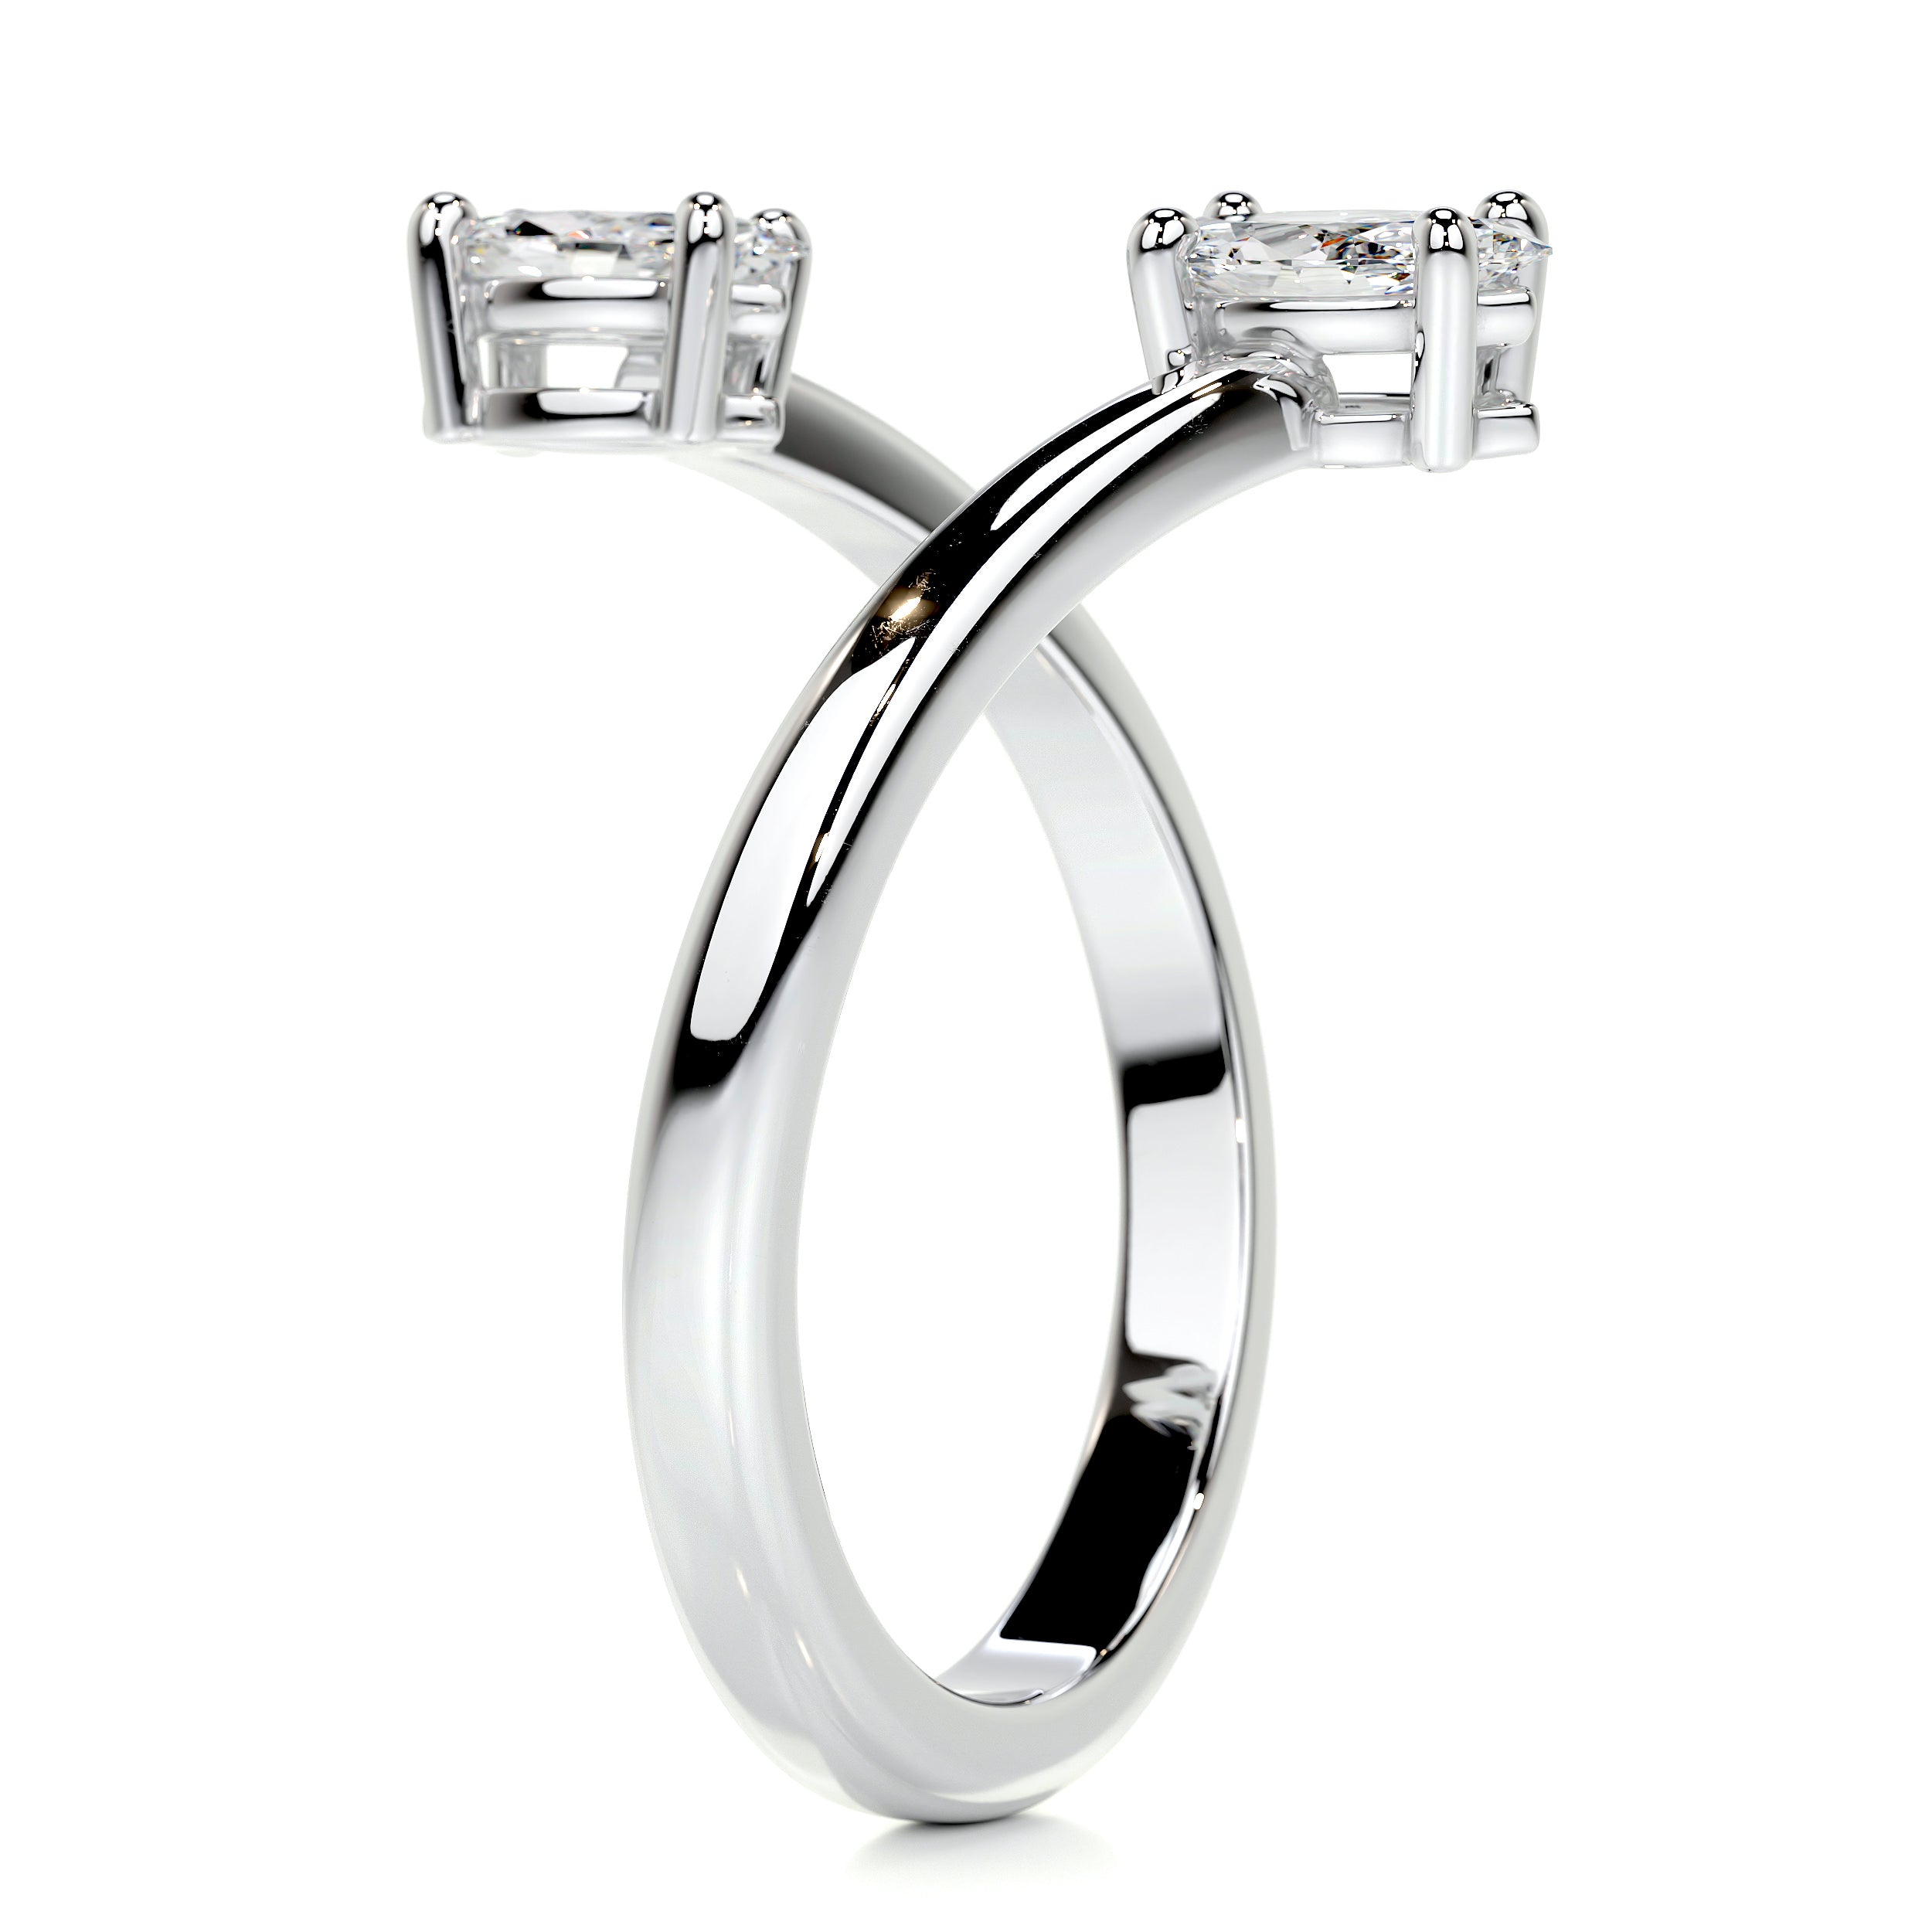 Anita Fashion Ring   (0.36 Carat) -Platinum